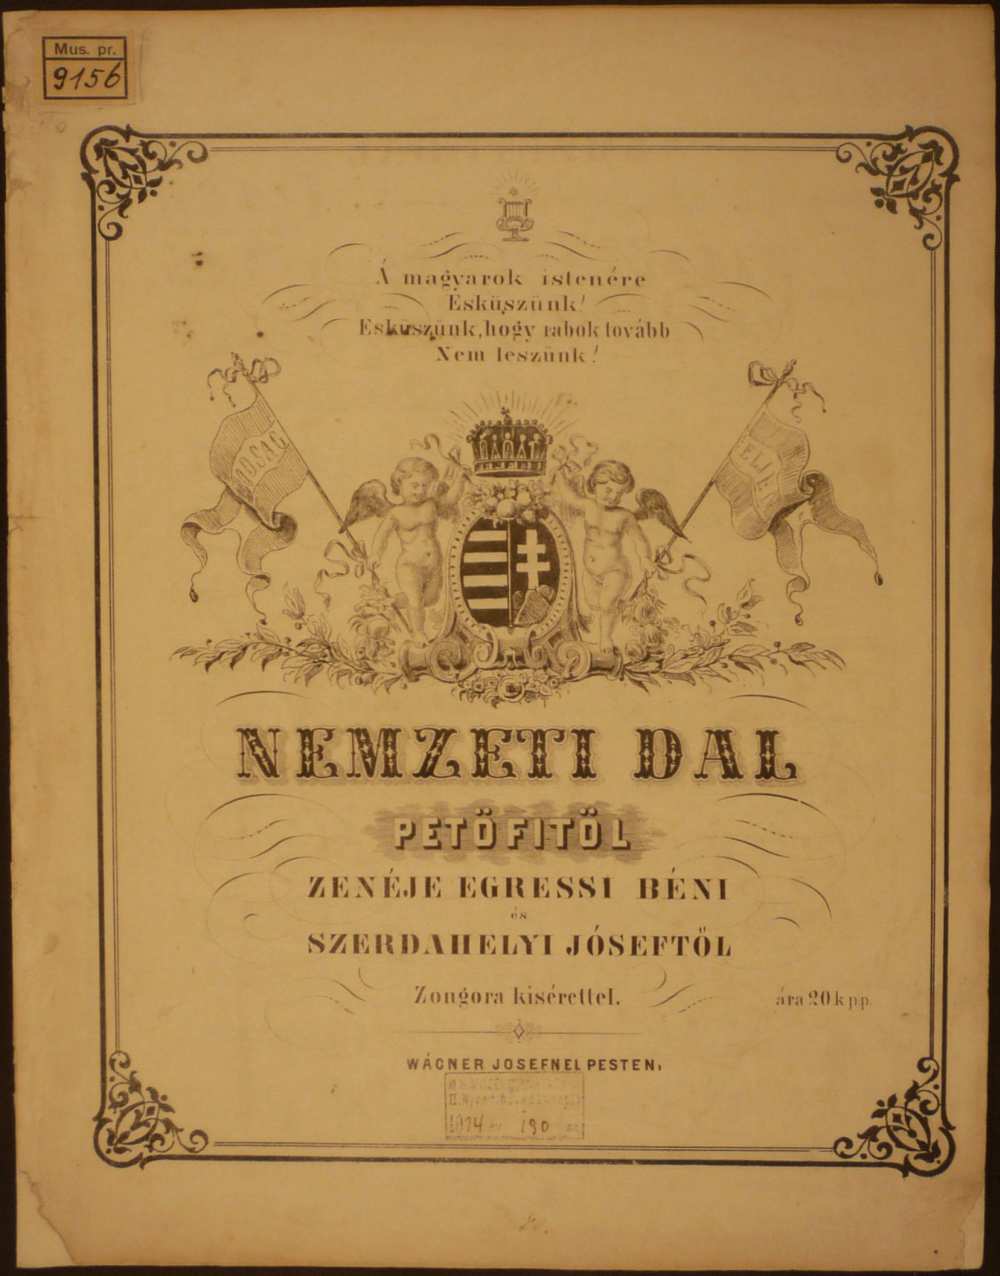 Egressy-Szerdahelyi: Nemzeti dal. Pest, Wágner Josef, s. a. – Színháztörténeti és Zeneműtár, Mus. pr. 9.156